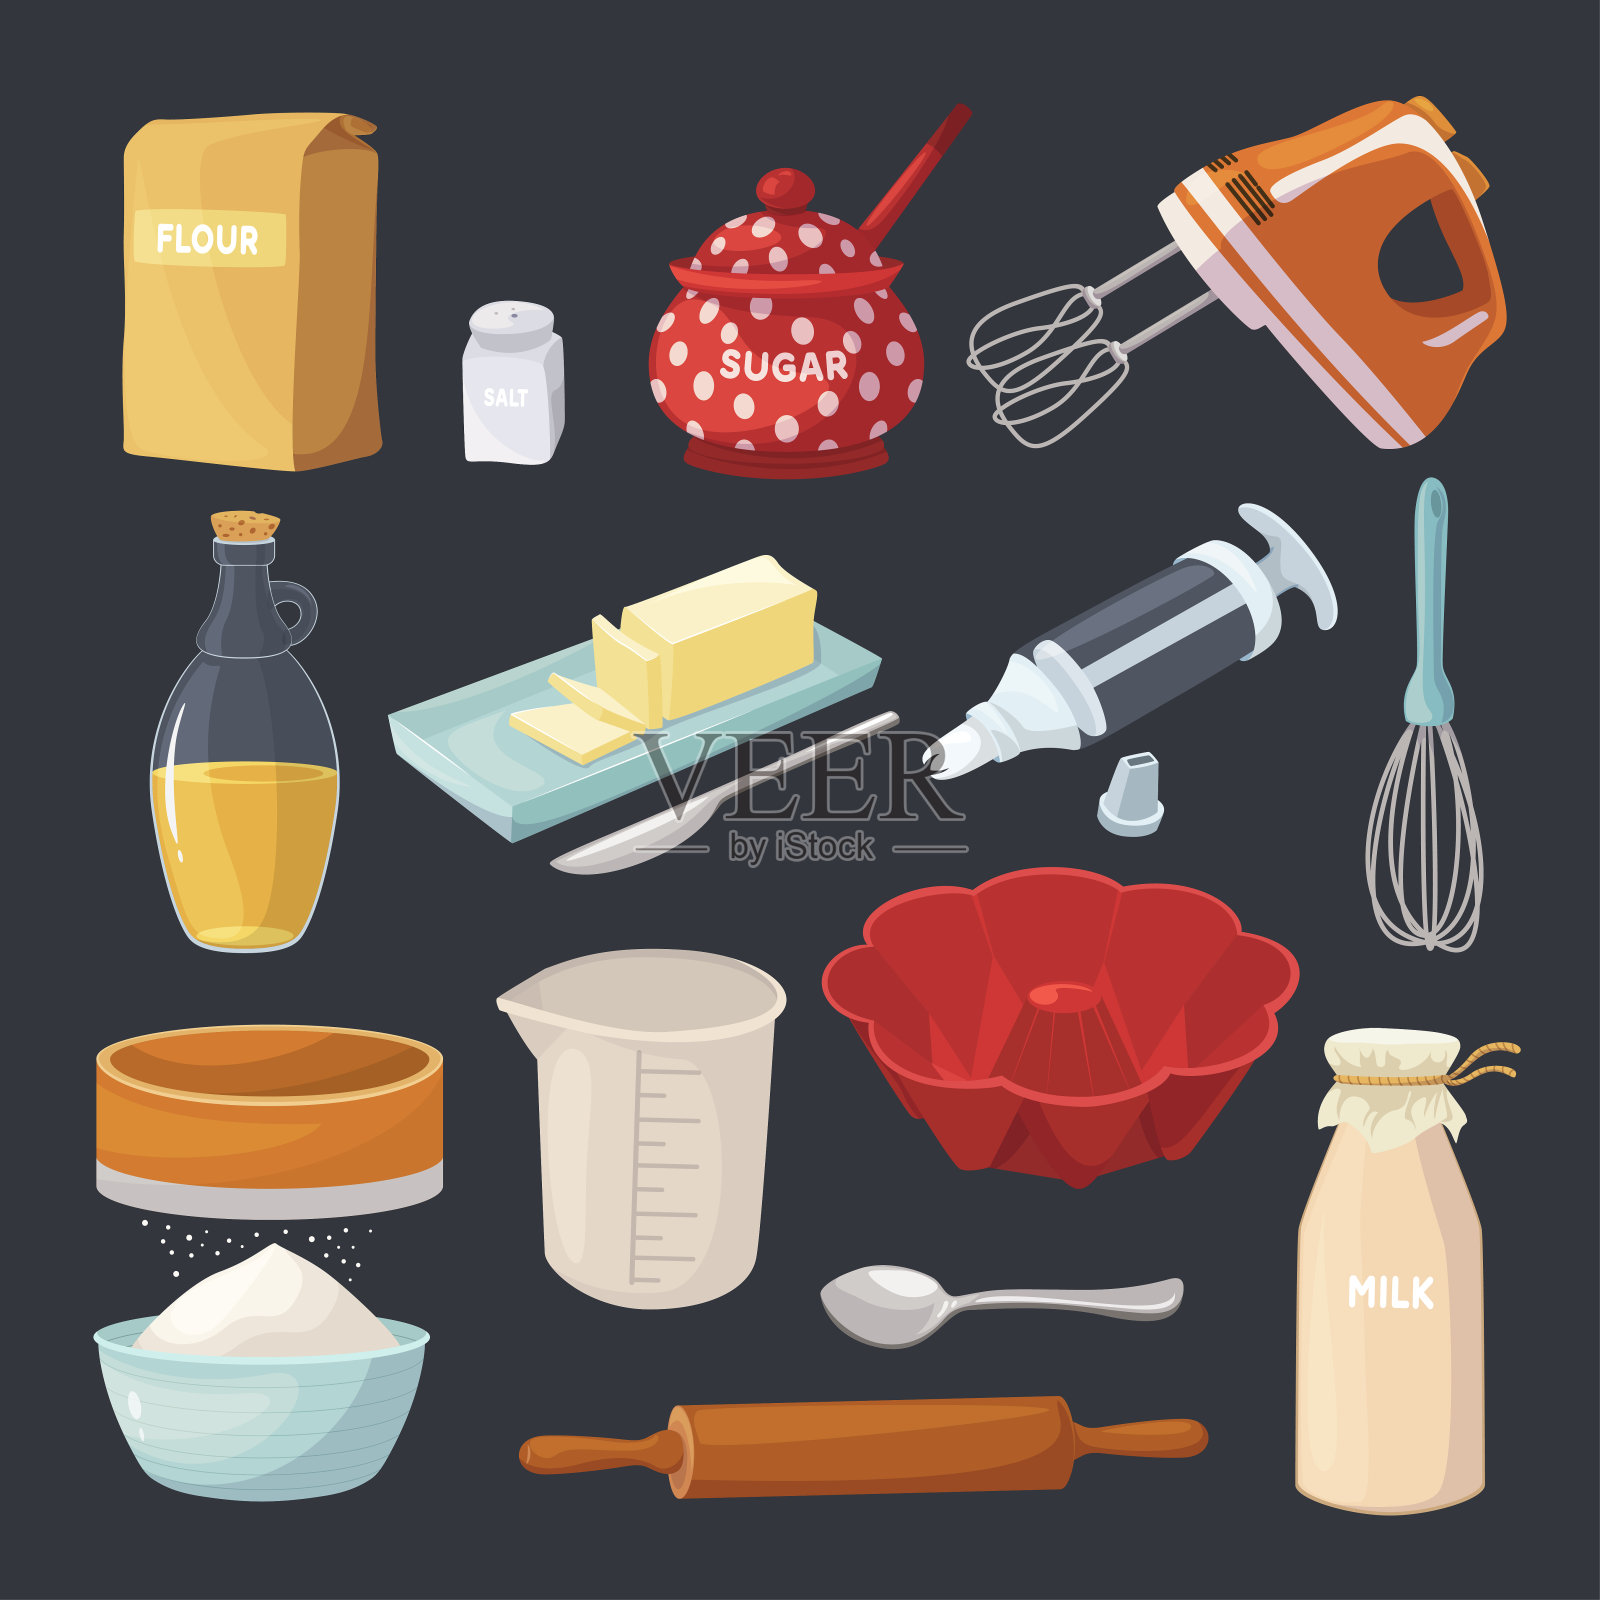 烘焙糕点工具和厨房烹饪设备插画图片素材